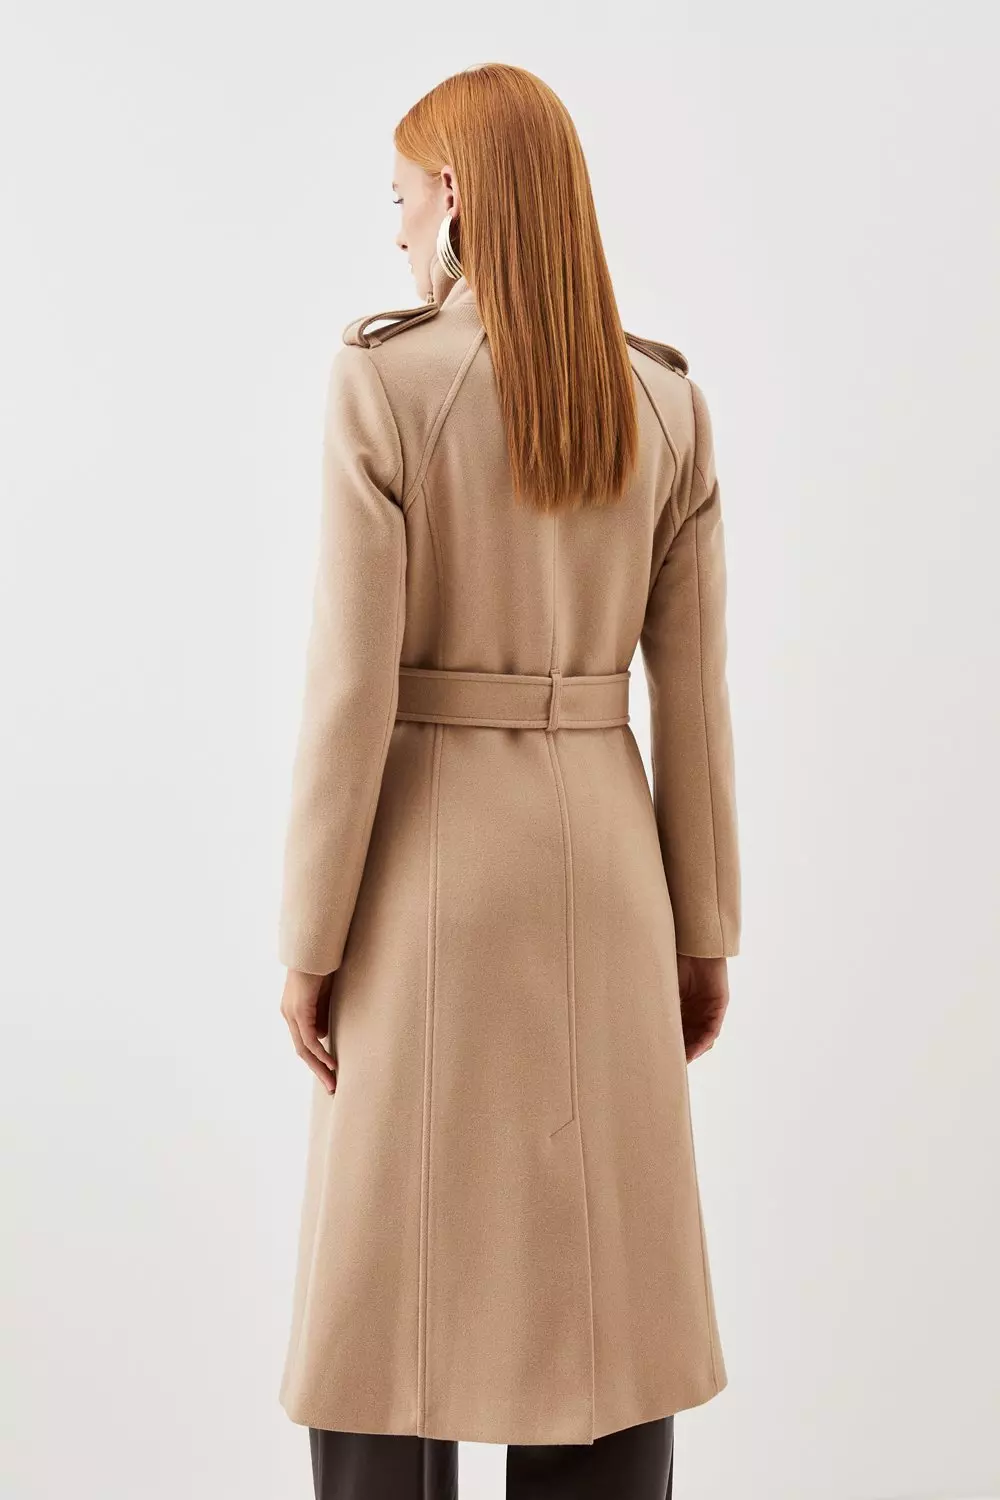 Tailored Wool Blend High Neck Belted Maxi Coat | Karen Millen